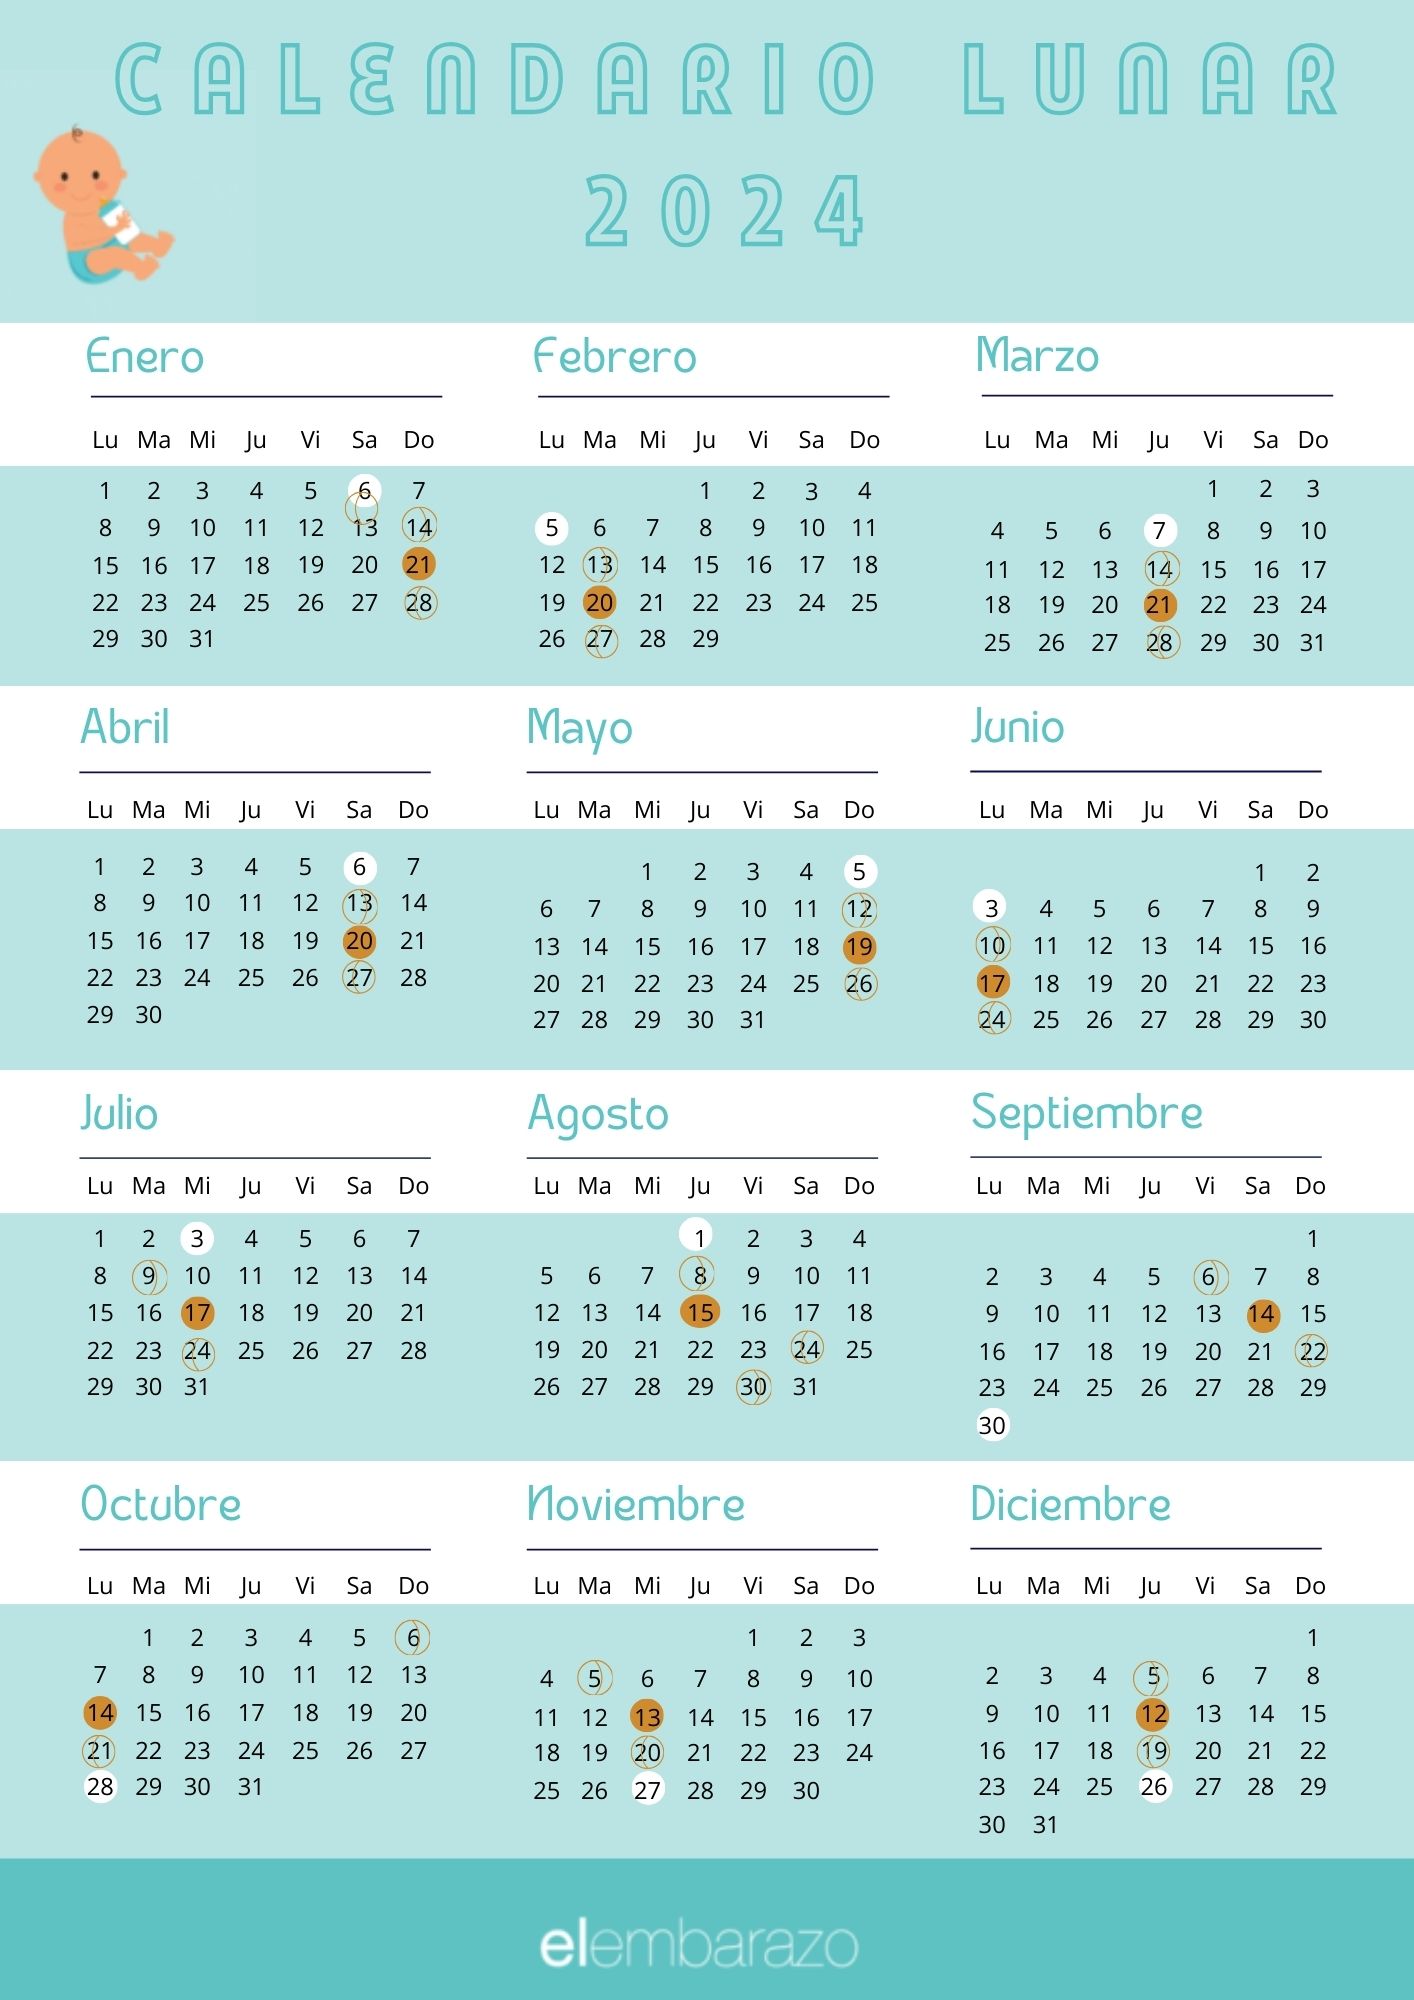 Calendario lunar del embarazo 2024 Calculadoras de embarazo